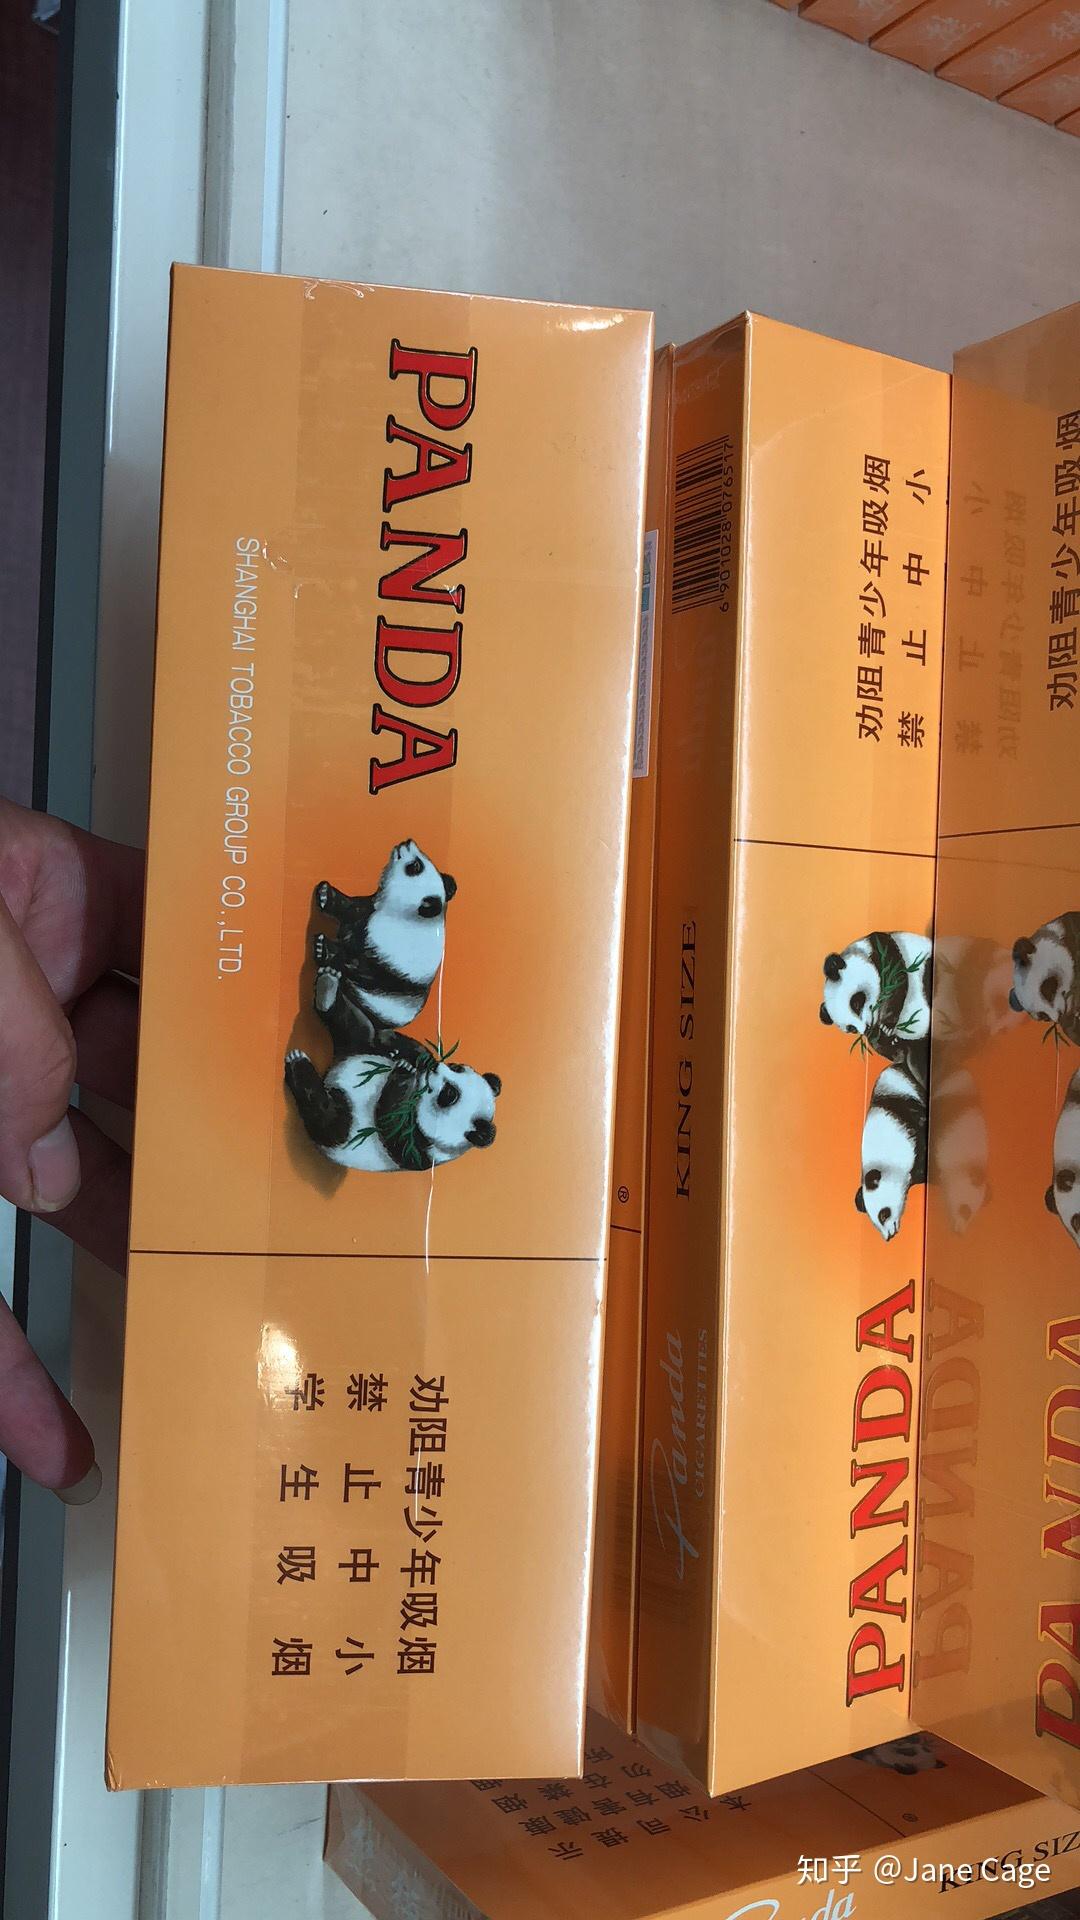 呼特浩特现在哪里可以买到熊猫烟 价格多少? 